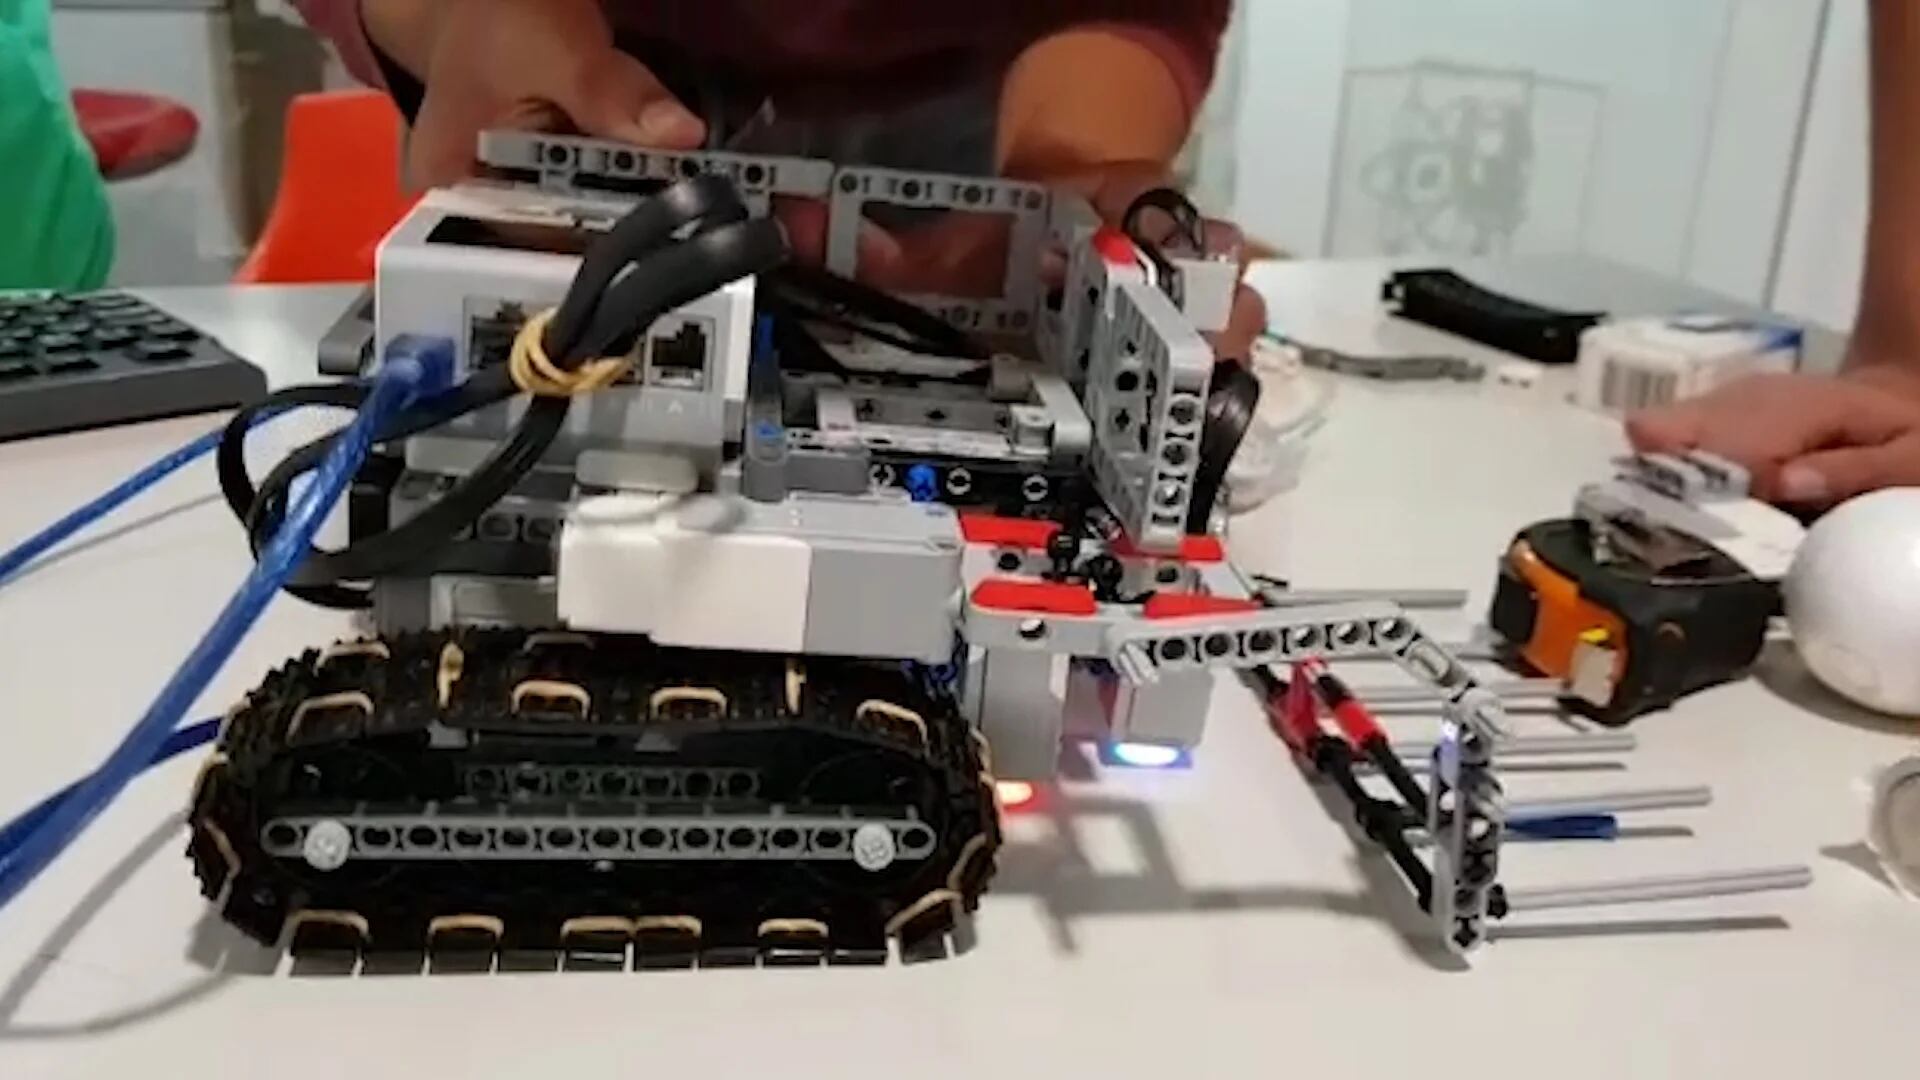 El robot que crearon se mueve de manera autónoma y es capaz de sortear obstáculos.